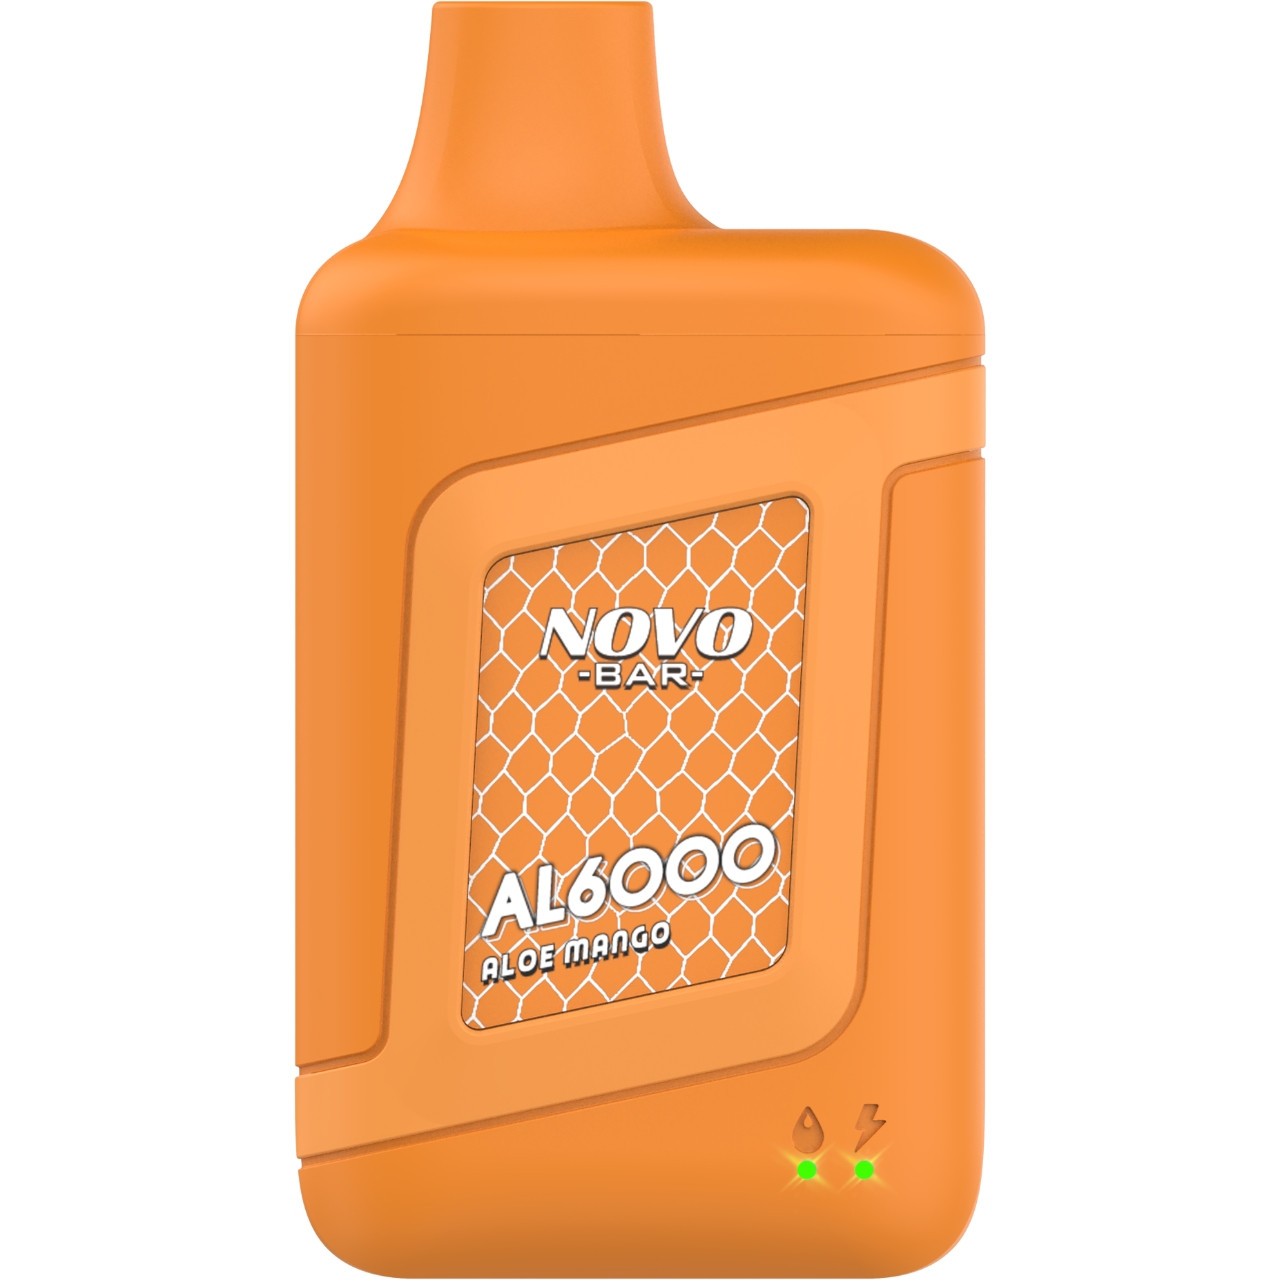 SMOK NOVO Bar AL6000 Disposable Device (6000 Puffs) -Aloe mango